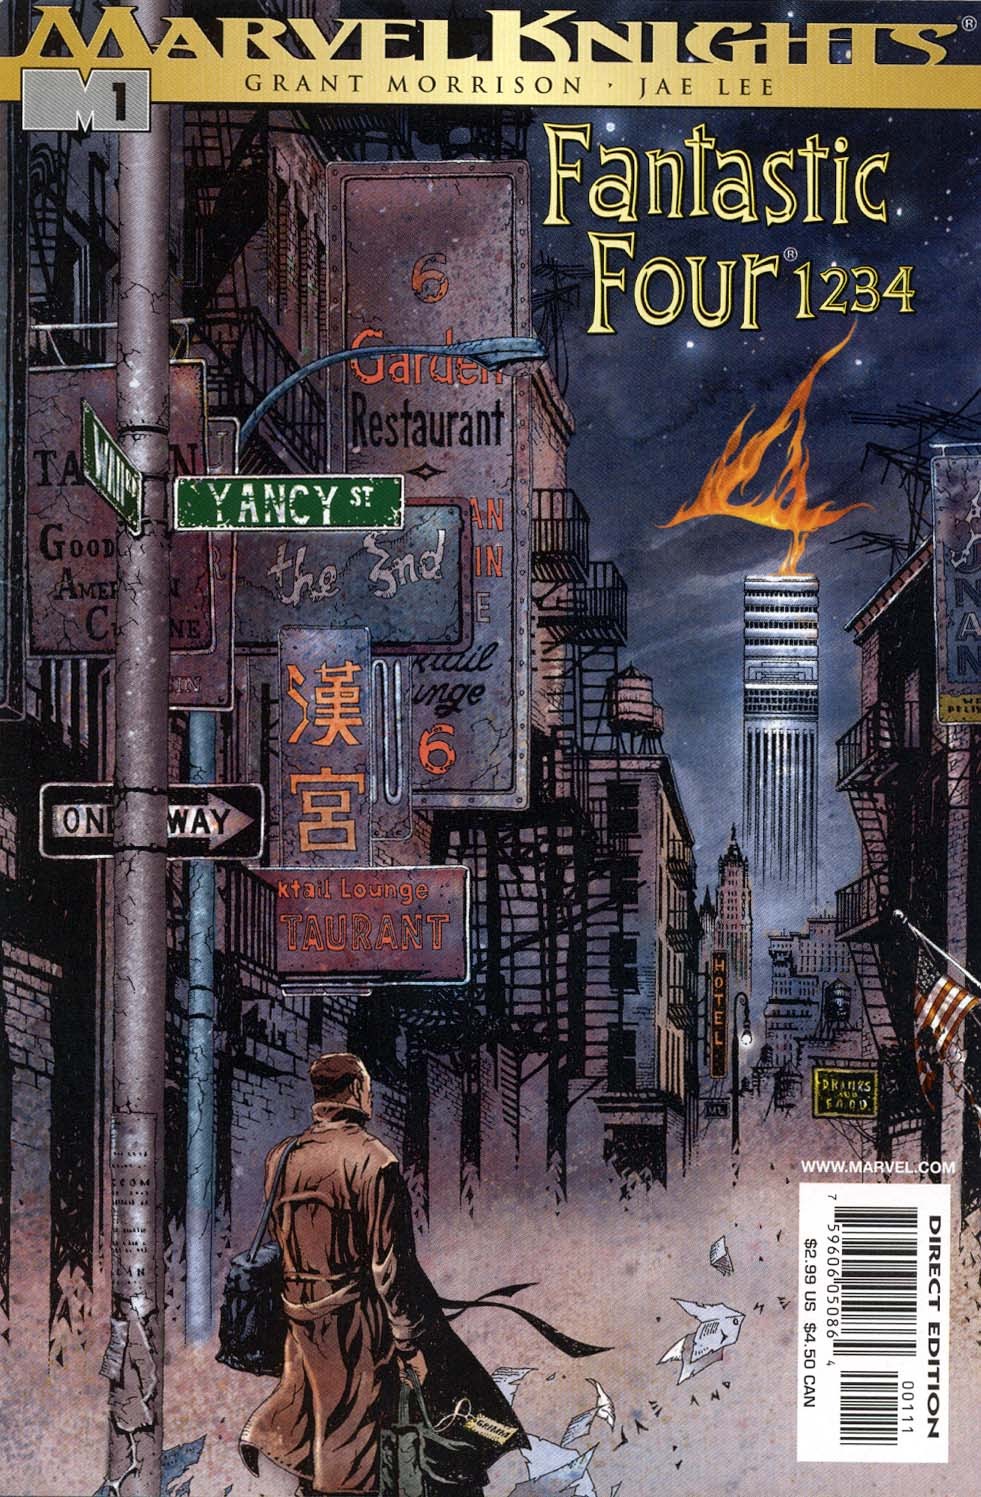 Fantastic Four: 1 2 3 4 Vol. 1 #1